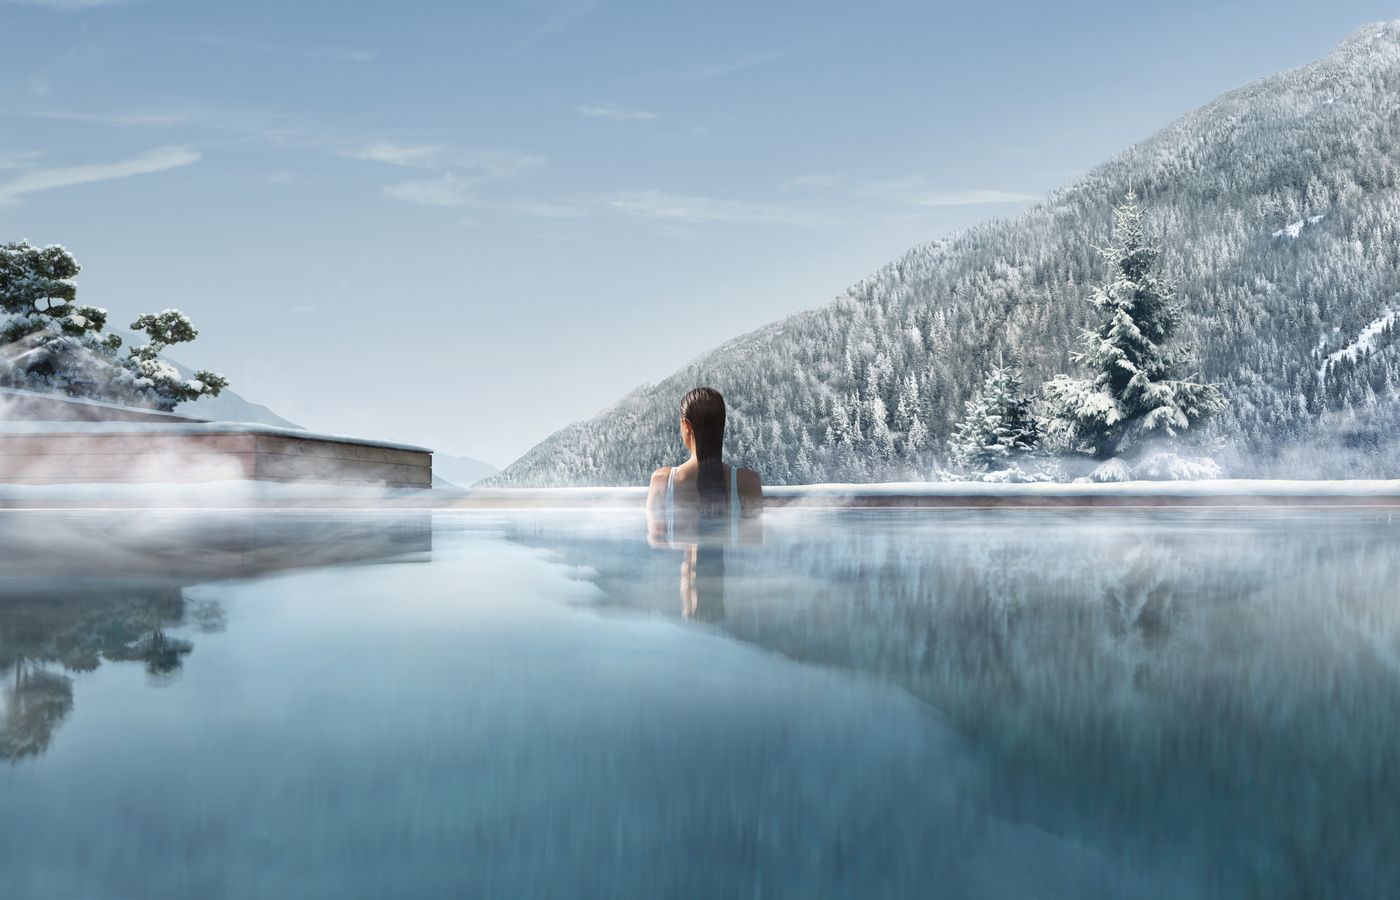 Trip Club Reisen - FitReisen - Lefay Resort & Spa Dolomiti in Pinzolo buche jetzt Deinen Wellness & Beauty Urlaub im Lefay Resort & Spa Dolomiti in der Region Südtirol, in Italien günstig bei uns!